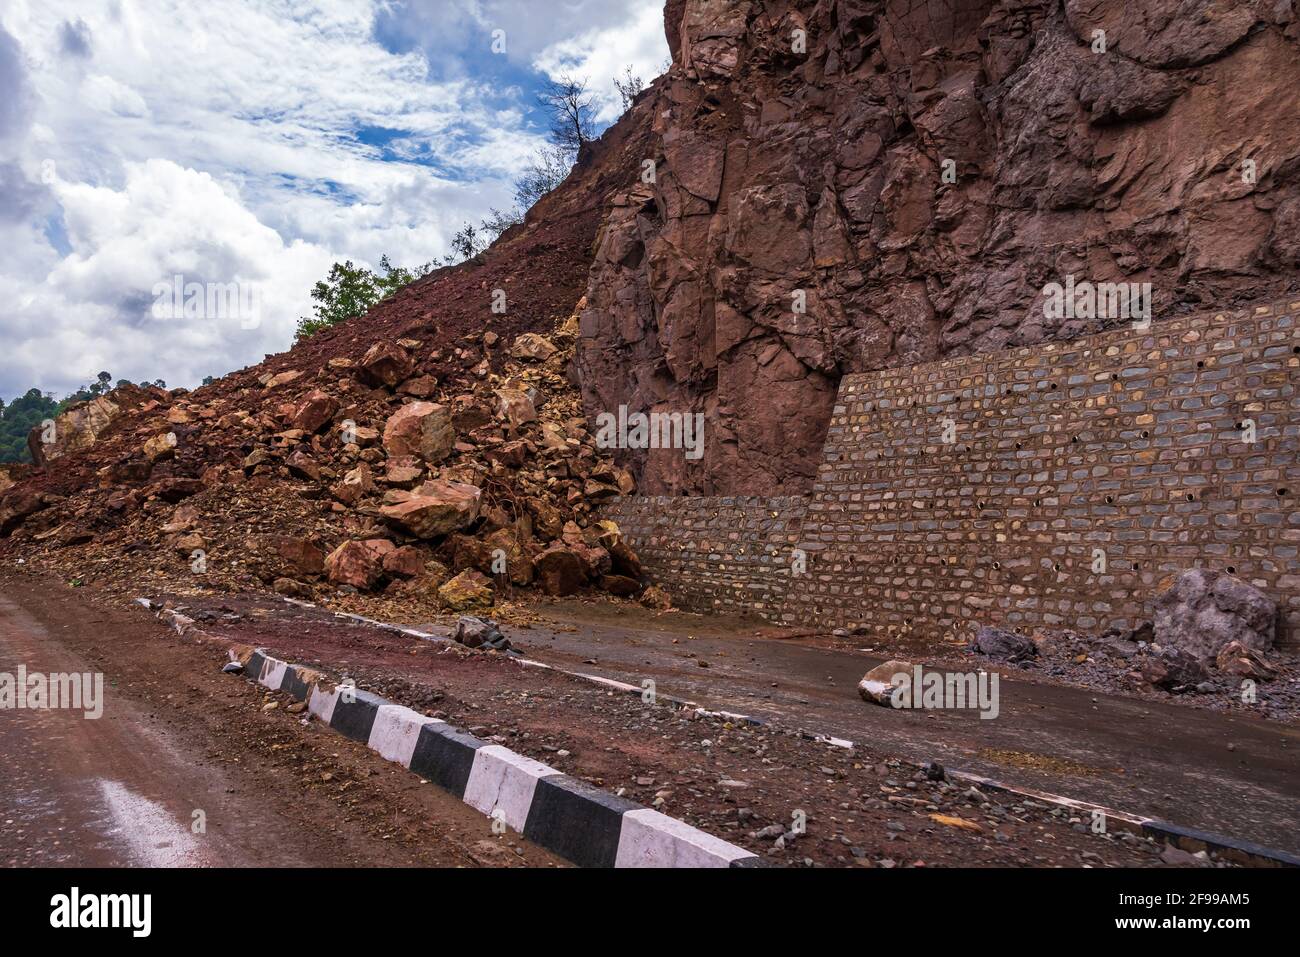 La chute du rockfall est bloquée et provoque des embouteillages sur l'autoroute Kalka Shimla route en glissement de terrain après une forte pluie due à une pente de montagne instable par voie d'élargissement b Banque D'Images